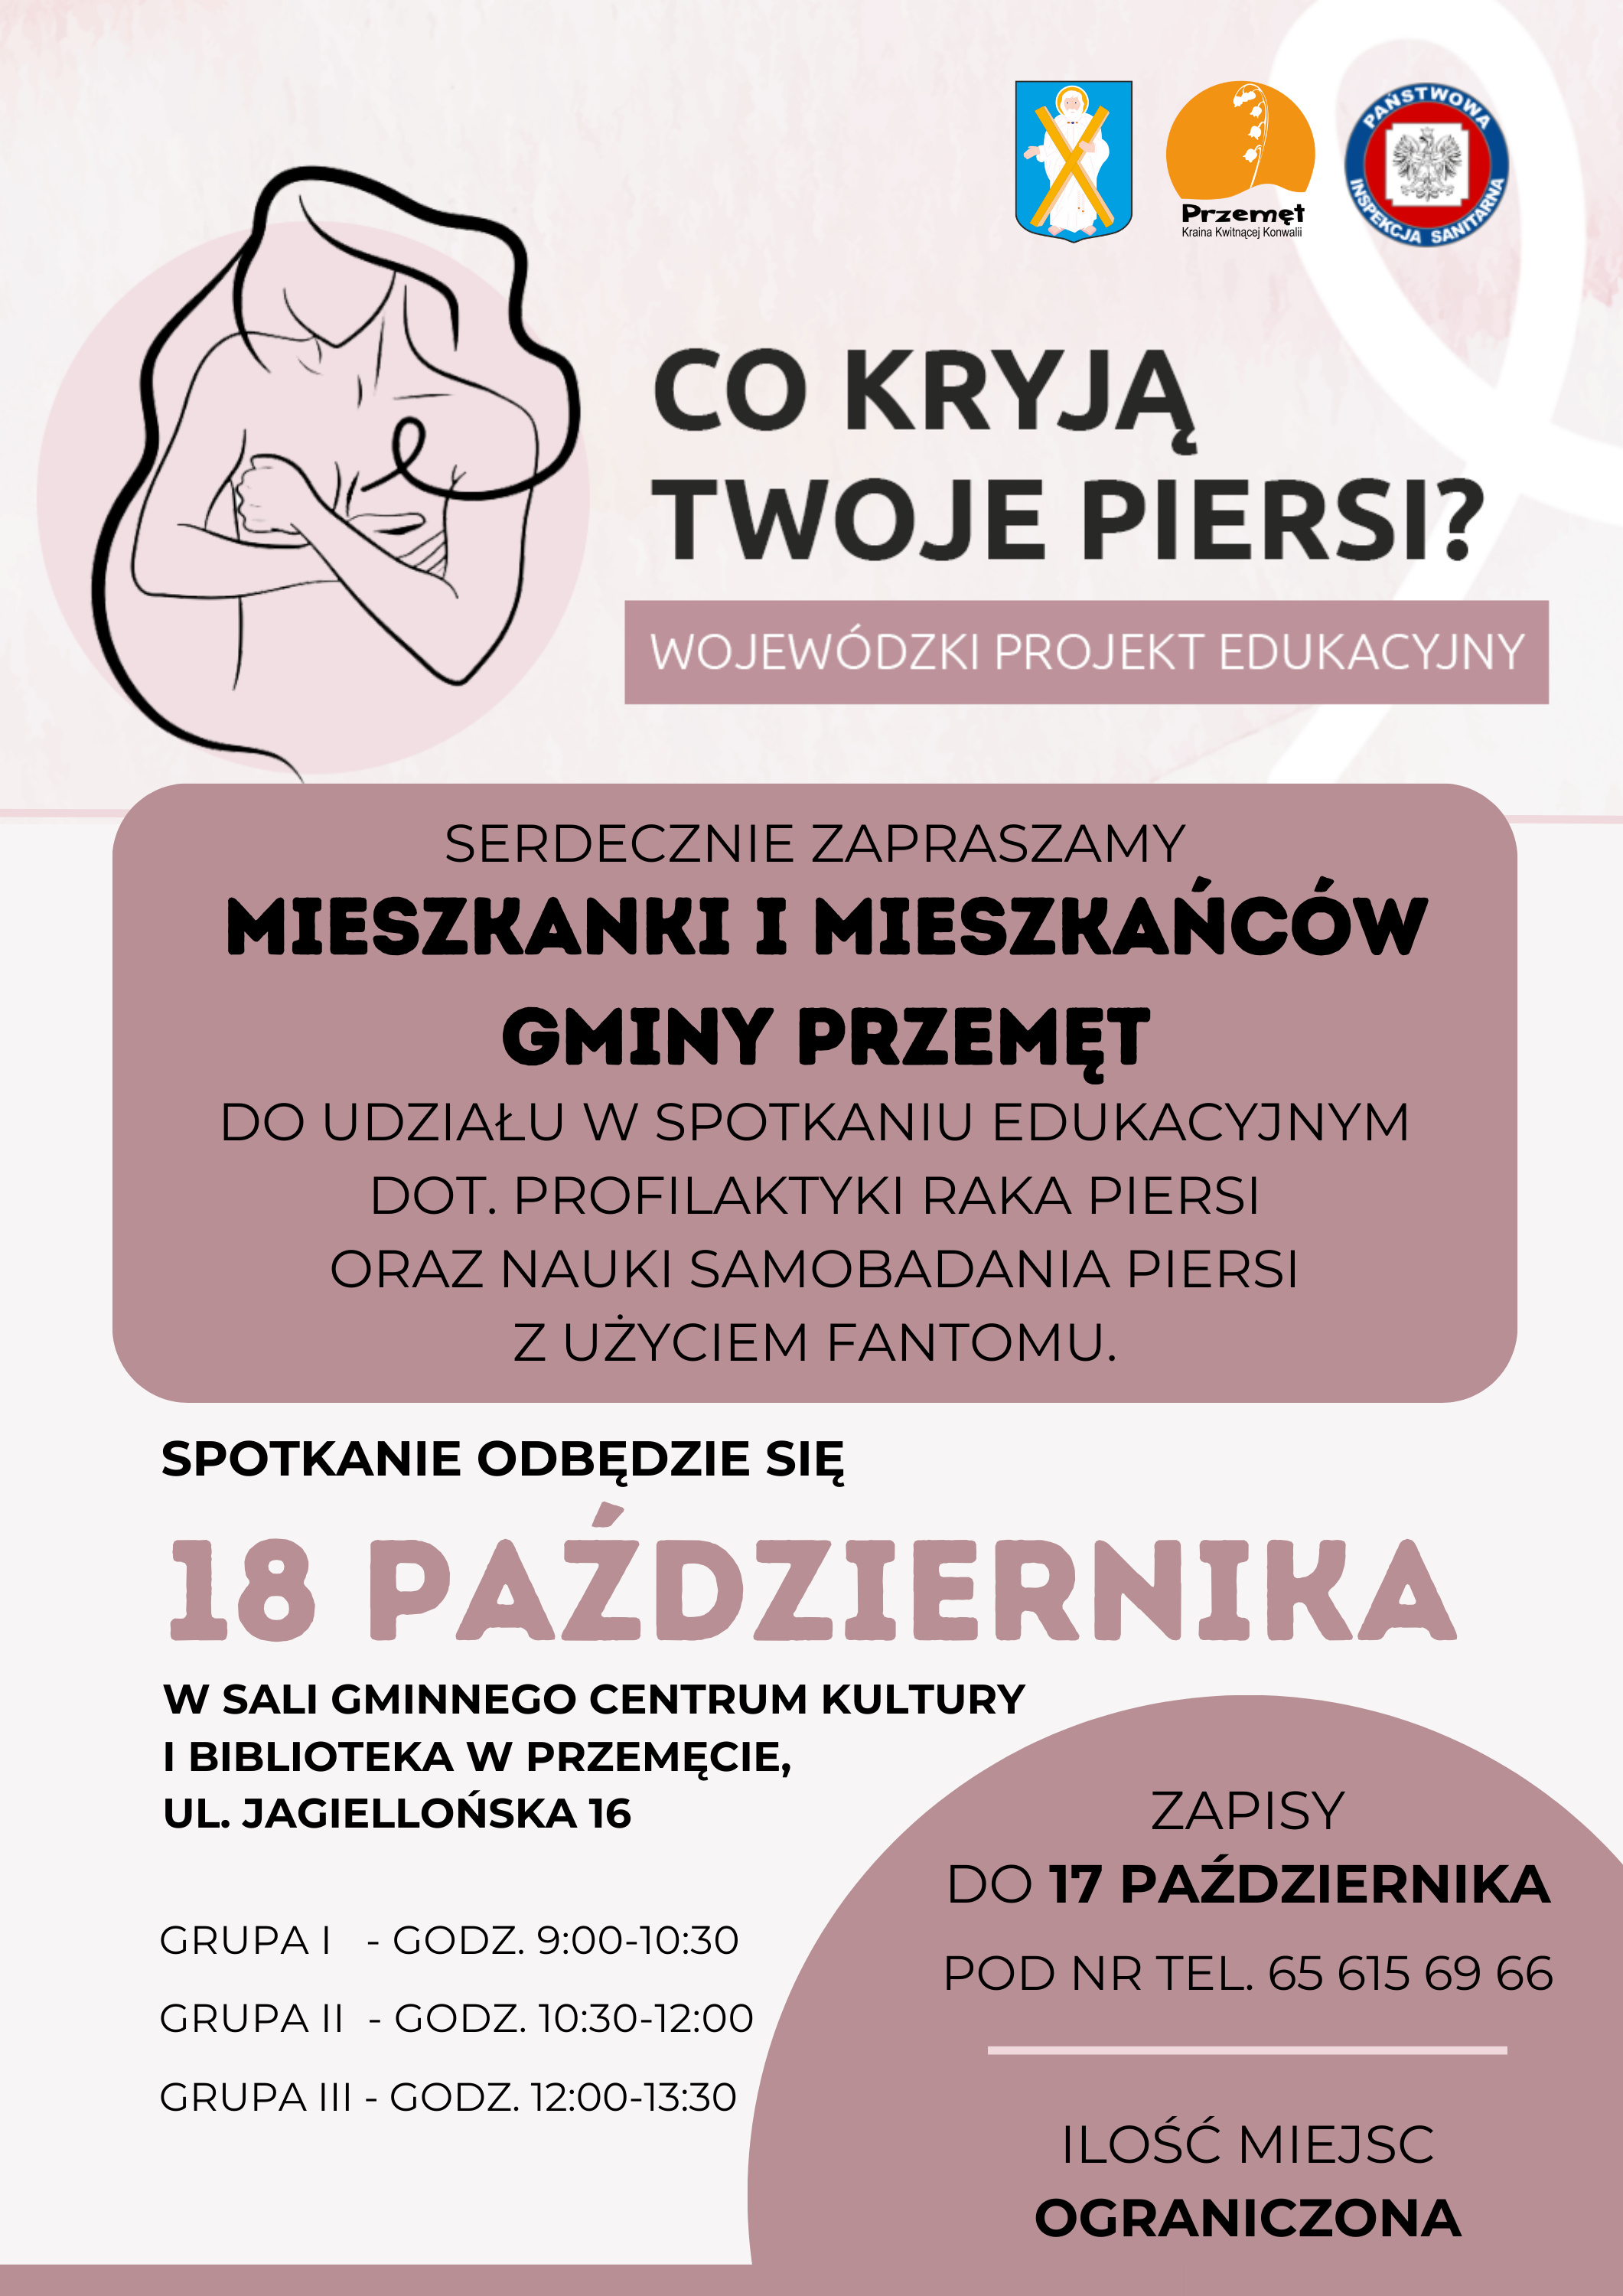 Zapraszamy mieszkańców Gminy Przemęt do udziału w spotkaniu edukacyjnym dotyczącym profilaktyki raka piersi oraz nauki samobadania piersi